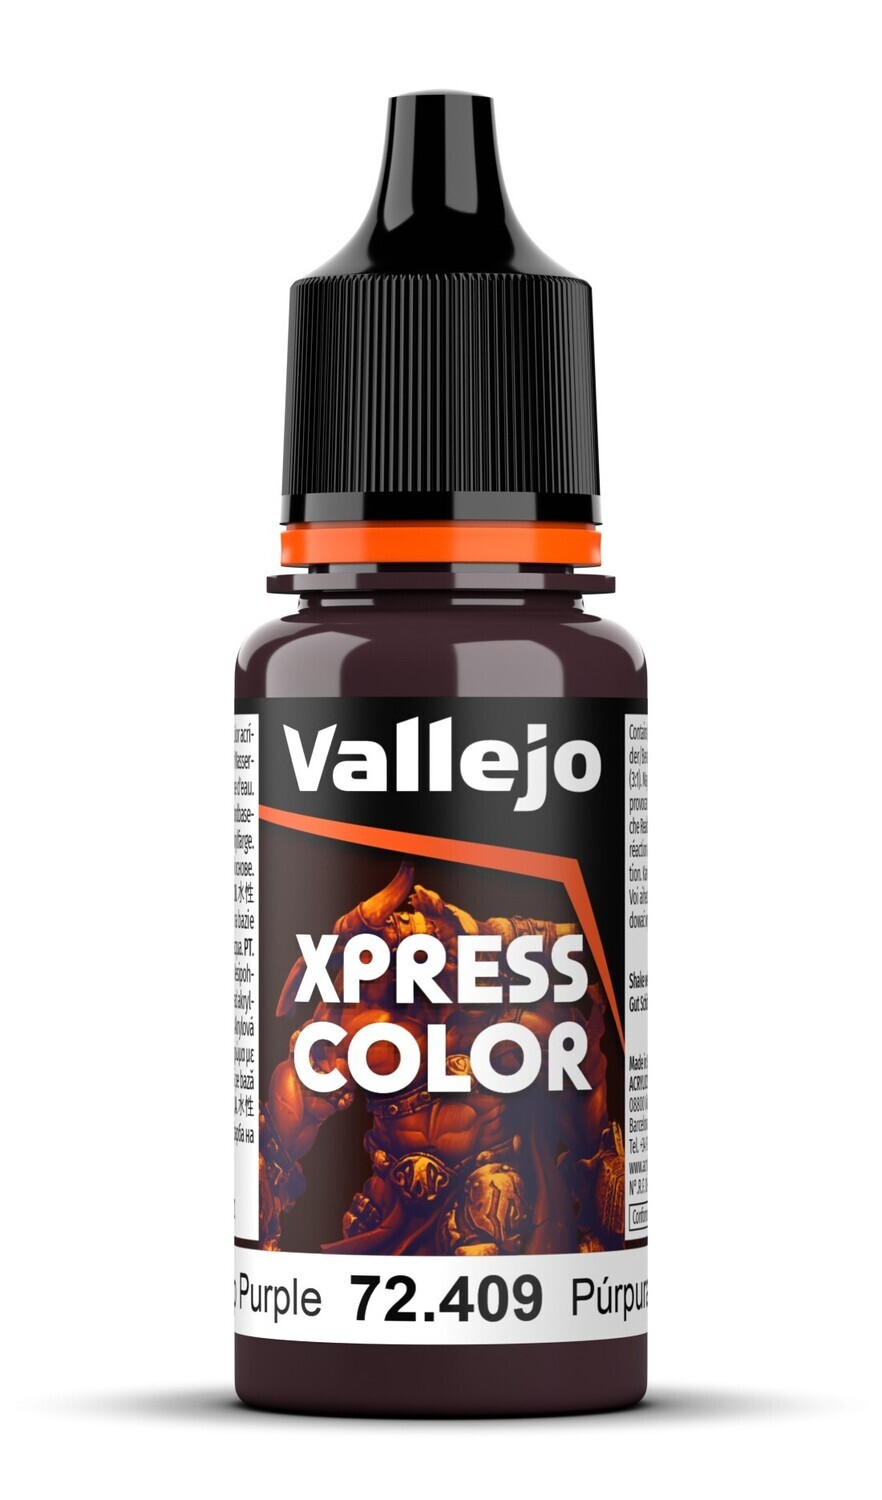 Deep Purple 18 ml - Xpress Color - Vallejo